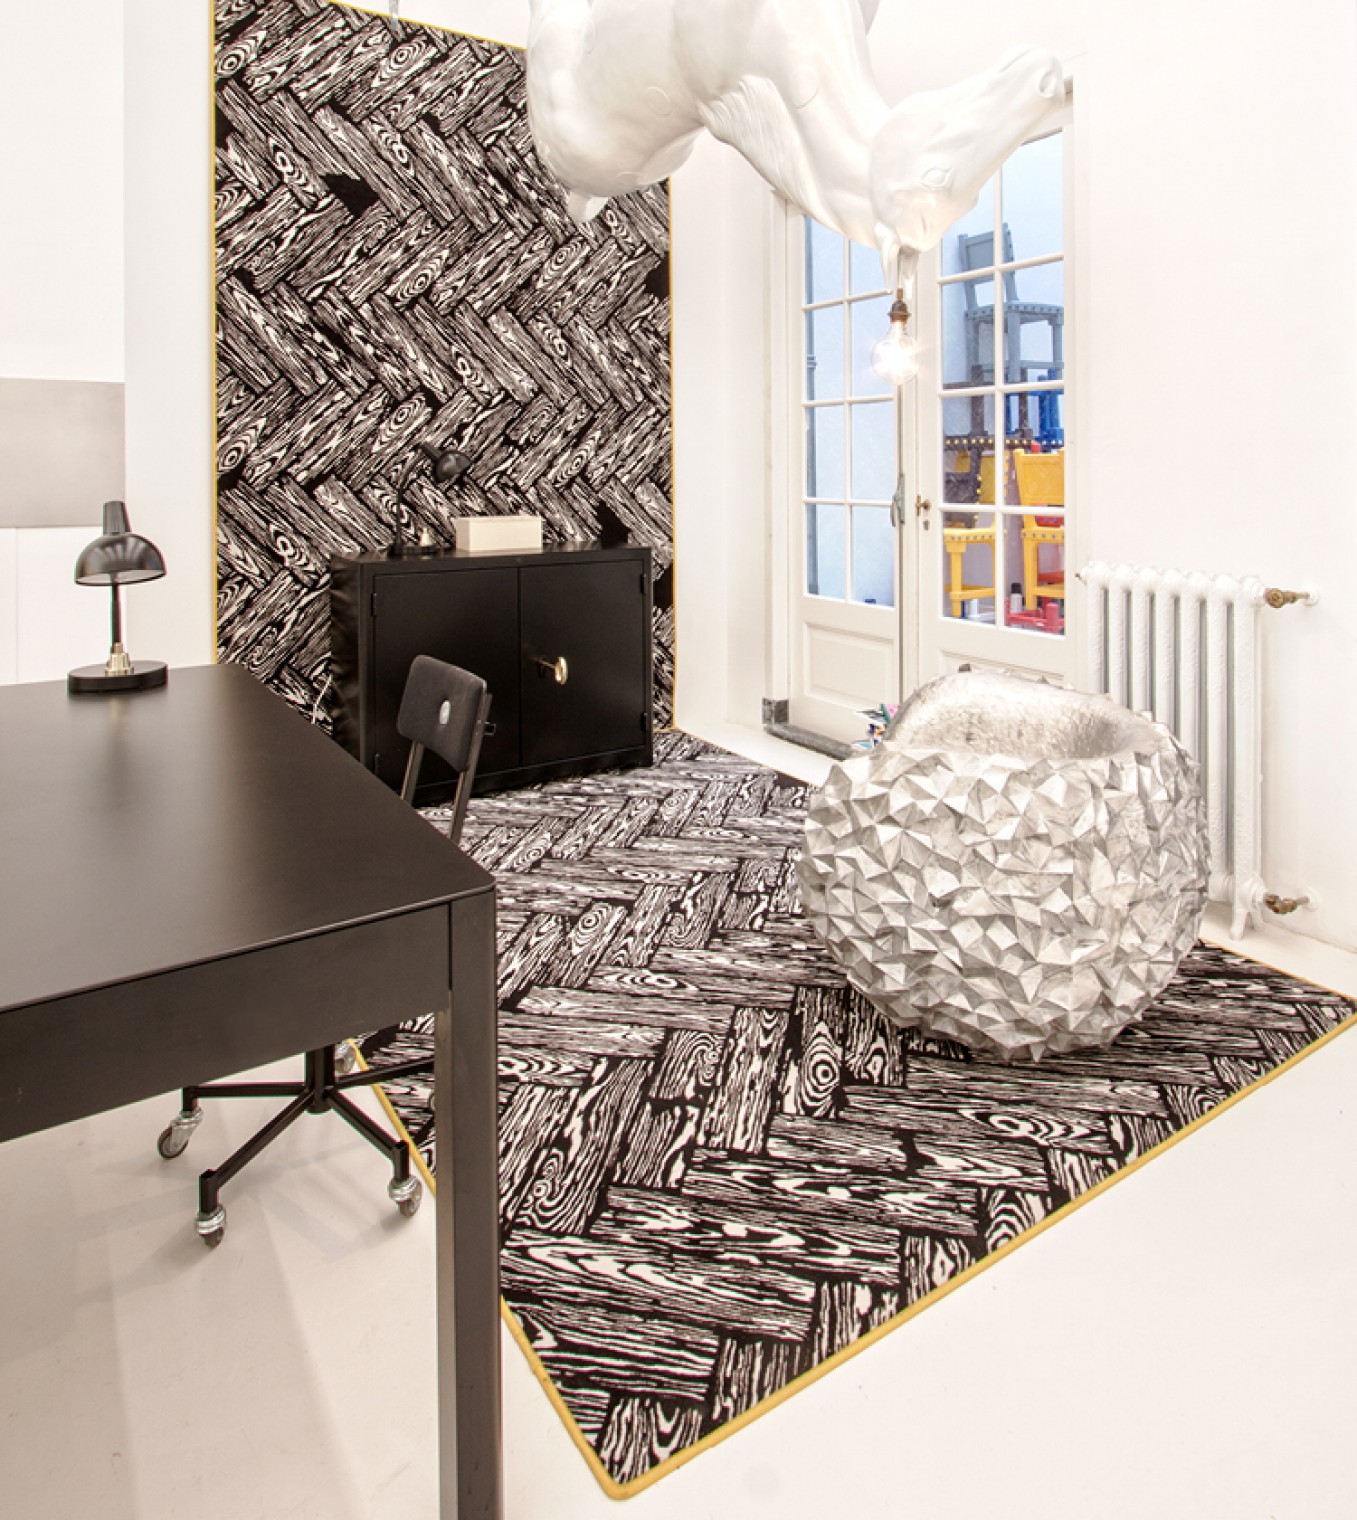 Studio Job Carpet_ gebruikt als wandtapijt en tapijt